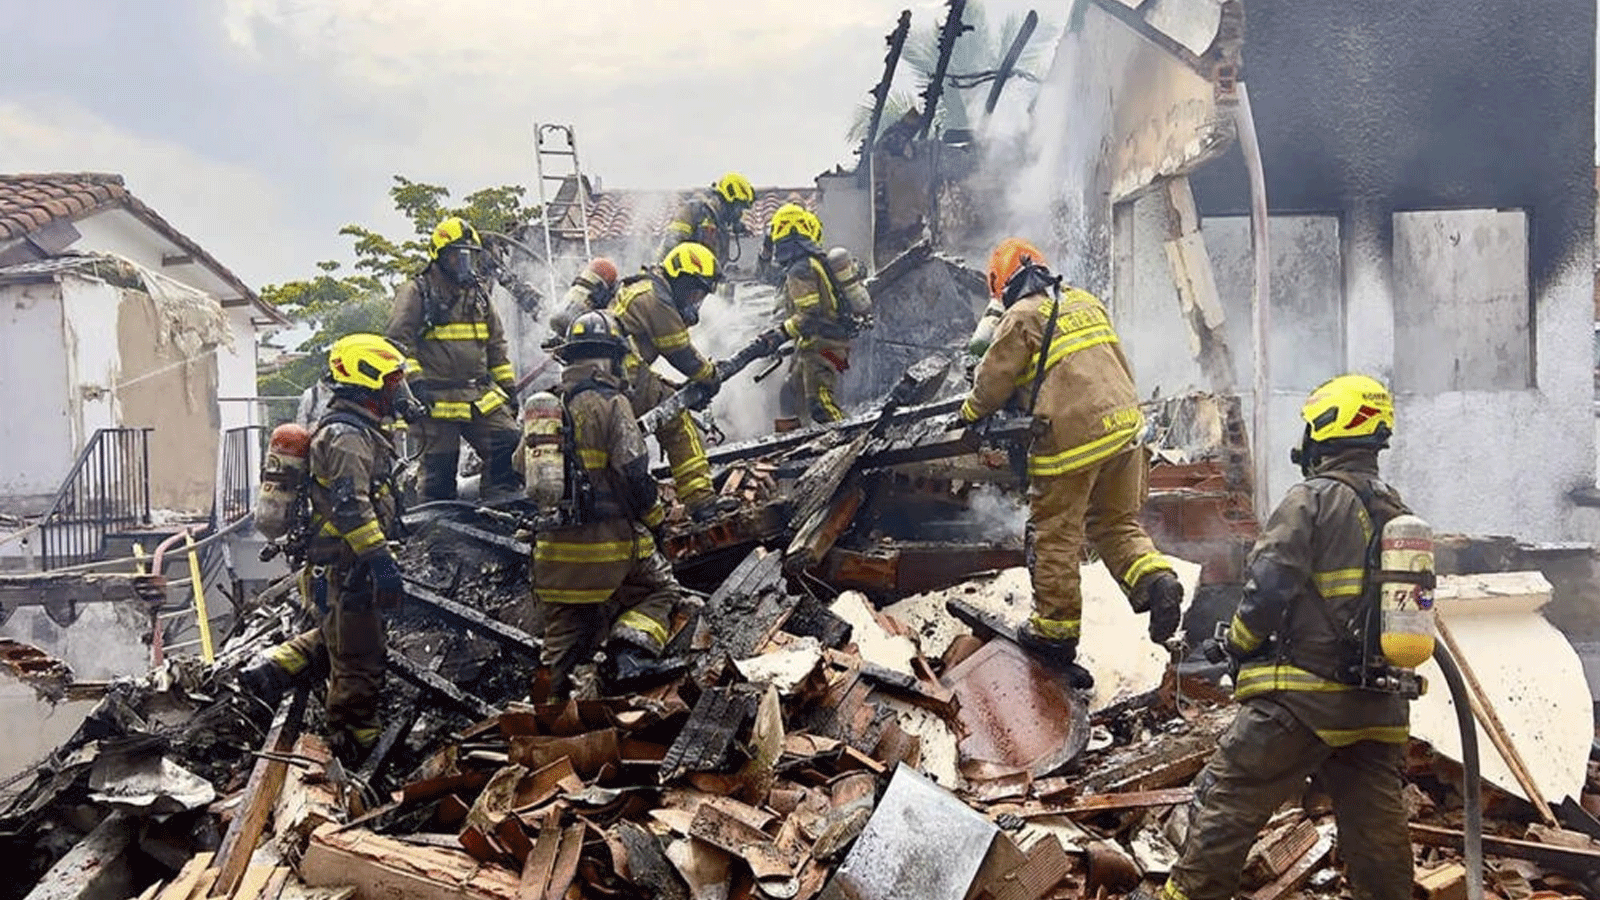 رجال الإطفاء يعملون في حي بيلين روساليس في ميديلين، كولومبيا في الموقع الذي تحطمت فيه طائرة صغيرة وتسببت بمقتل ثمانية أشخاص(مكتب بلدية ميديلين)